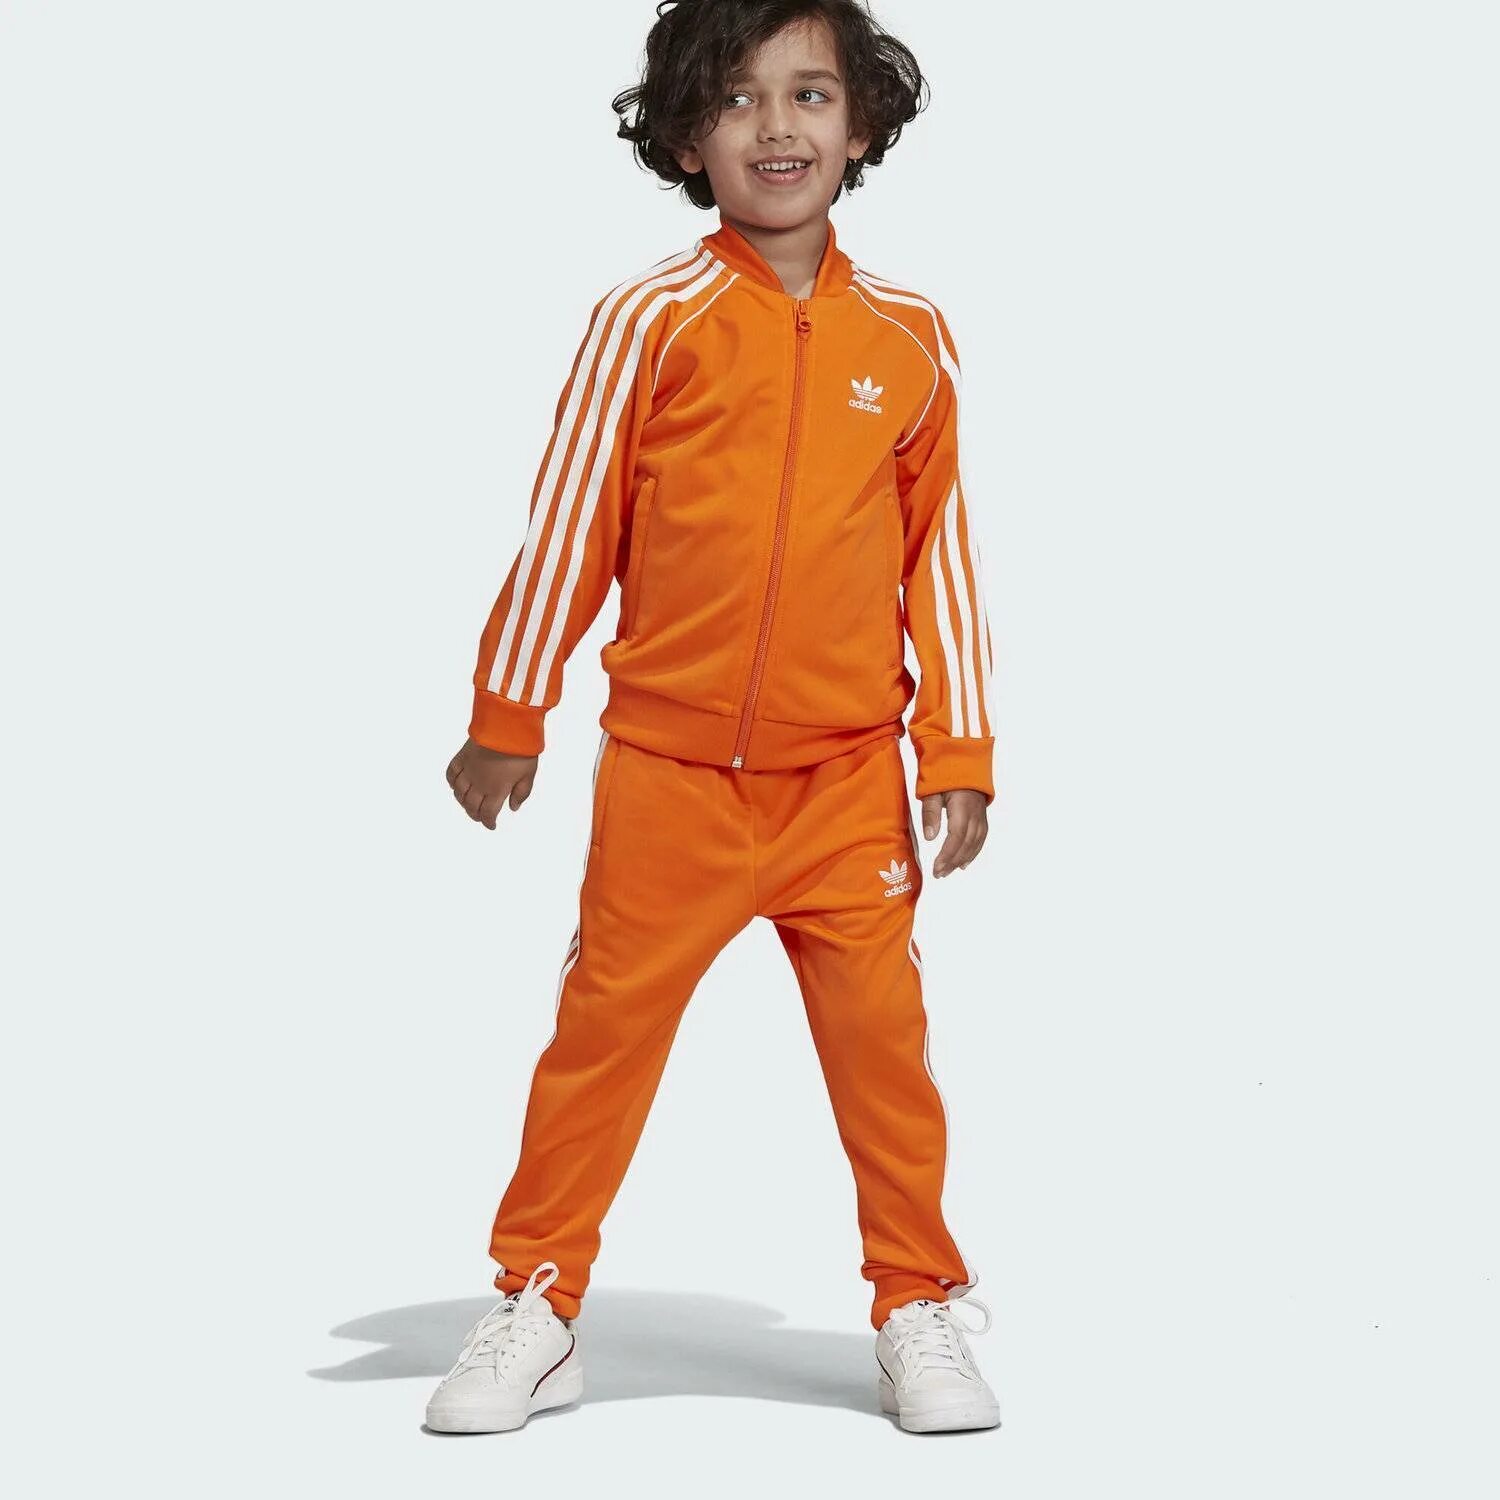 Костюм адидас SST оранжевый. Костюм адидас ориджинал Орандж. Оранжевый спортивный костюм мужской адидас. Adidas Originals Kids костюм.